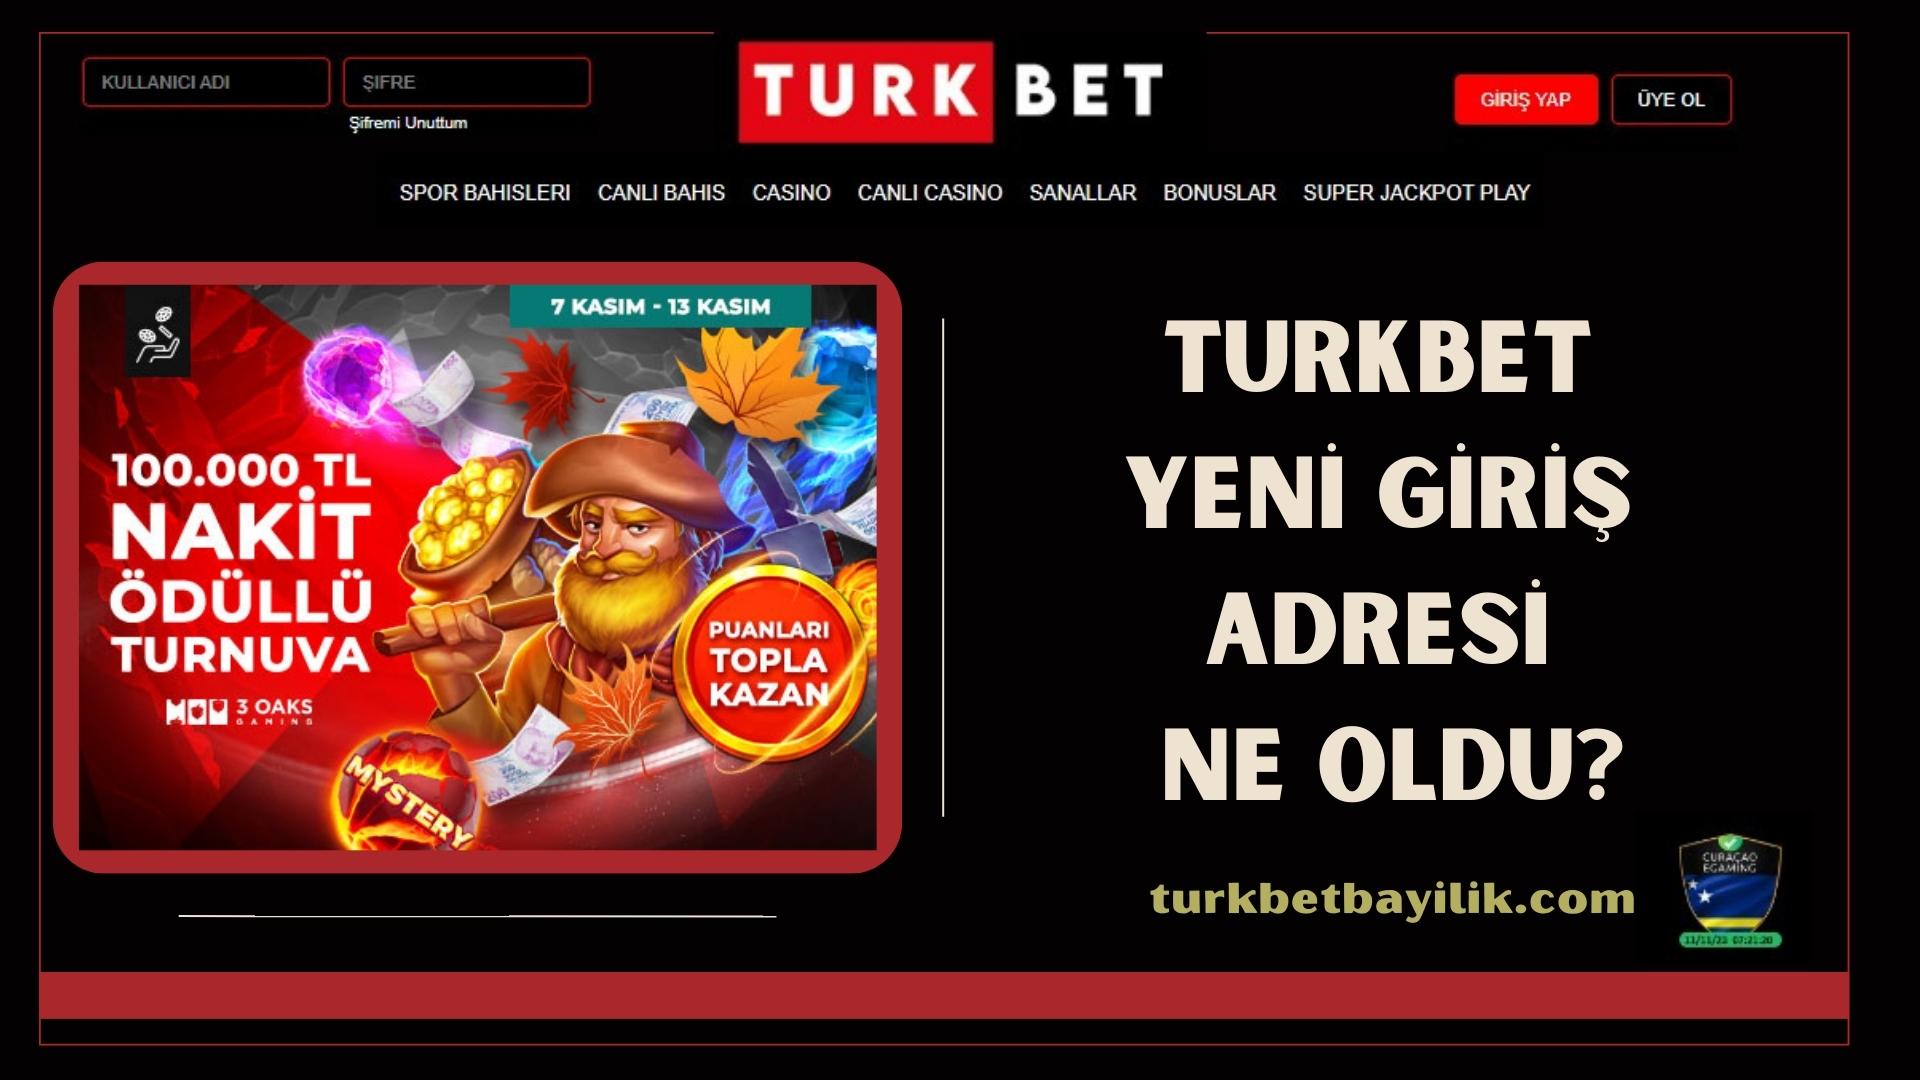 Turkbet Yeni Giriş Adresi Ne Oldu